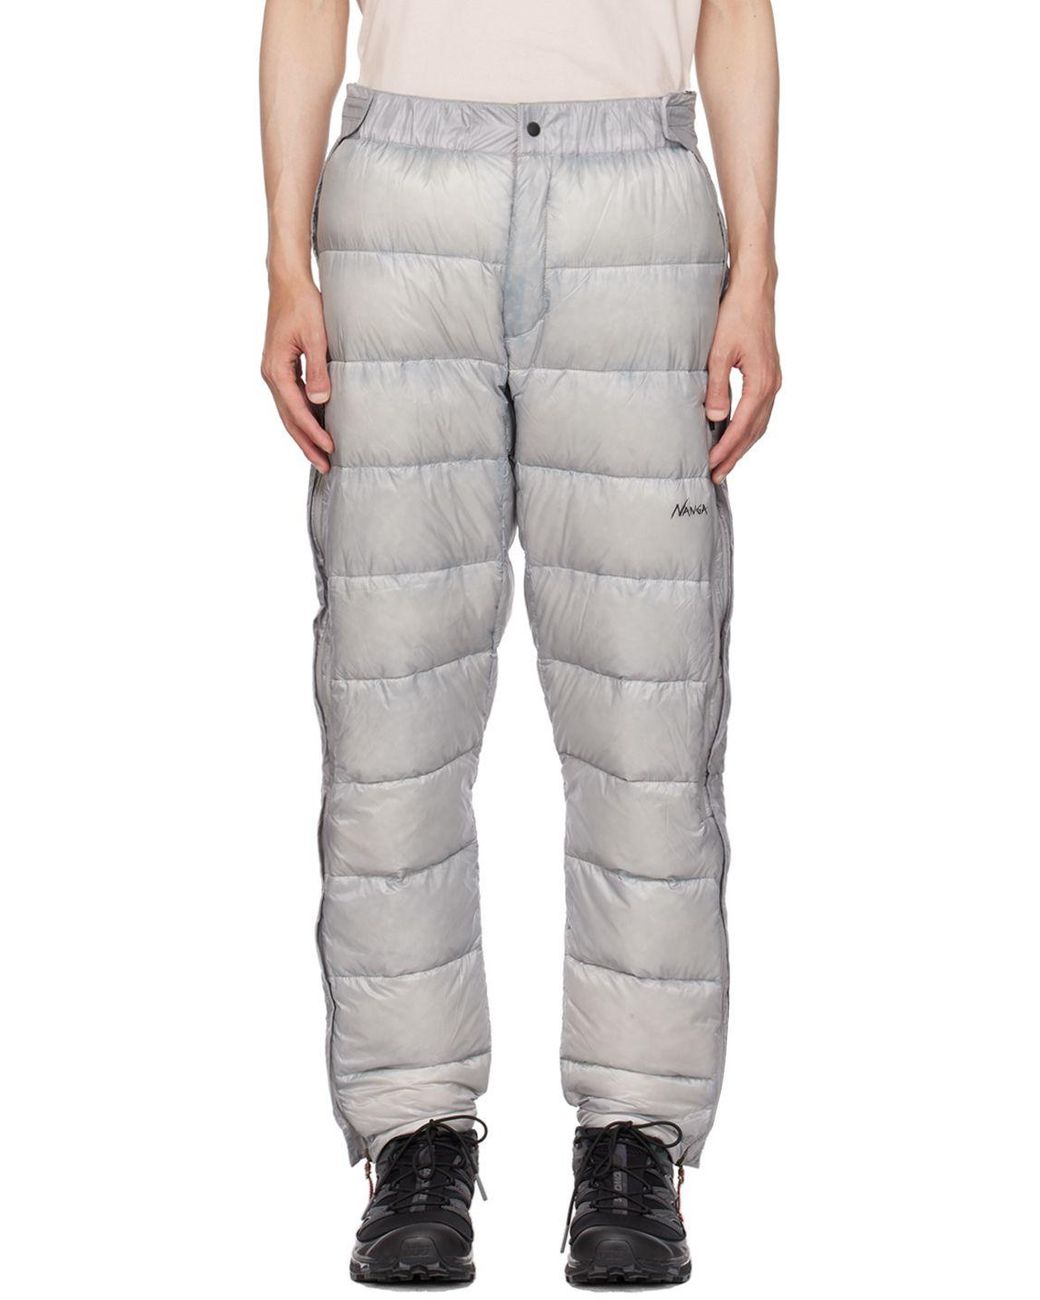 Rab Downpour Eco Waterproof Pants Review  EcoFriendly Waterproof Trousers